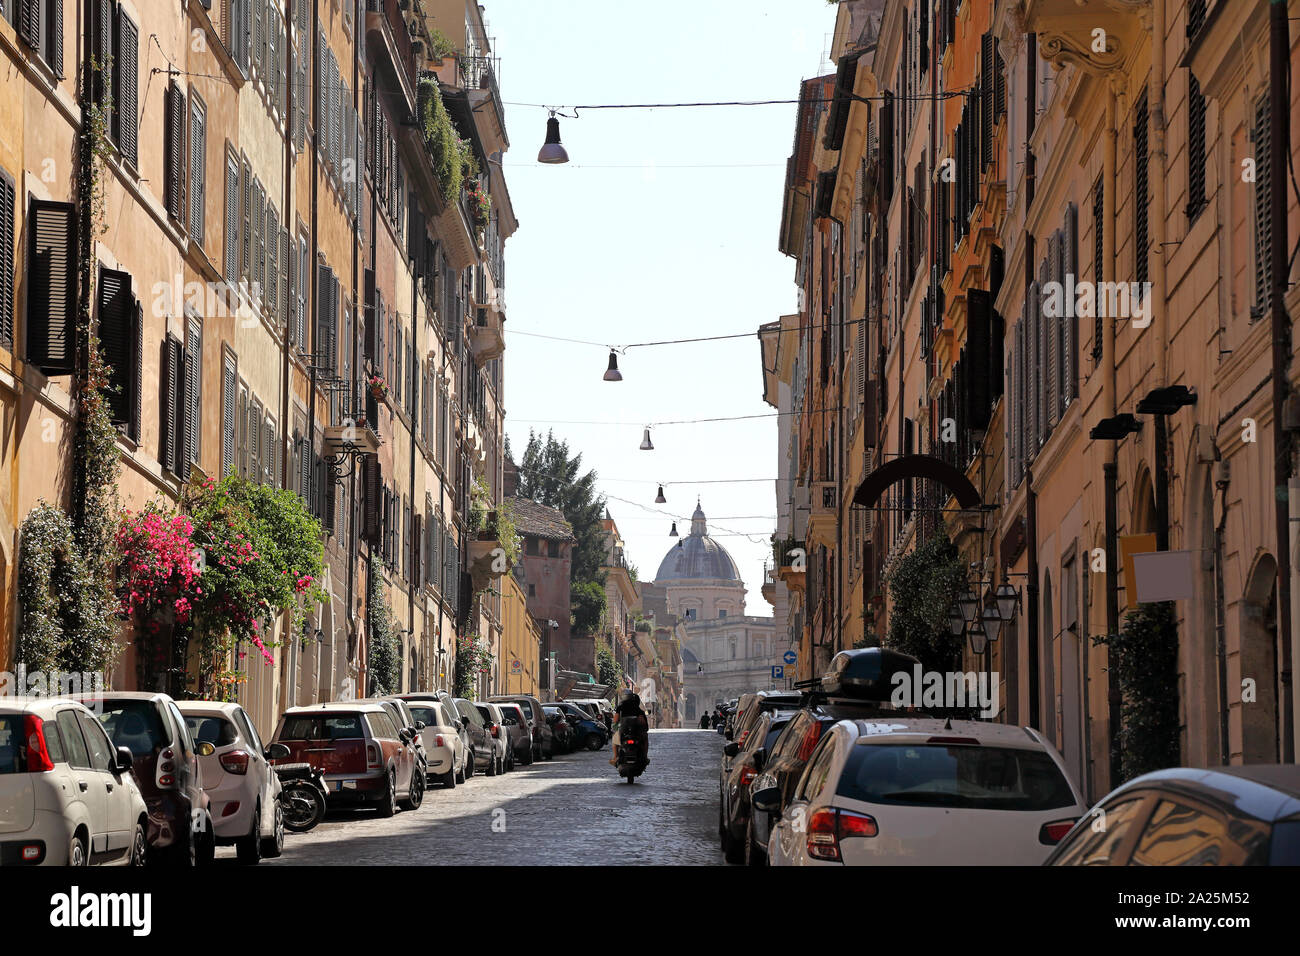 Roma, la vida cotidiana en la ciudad. Foto de stock